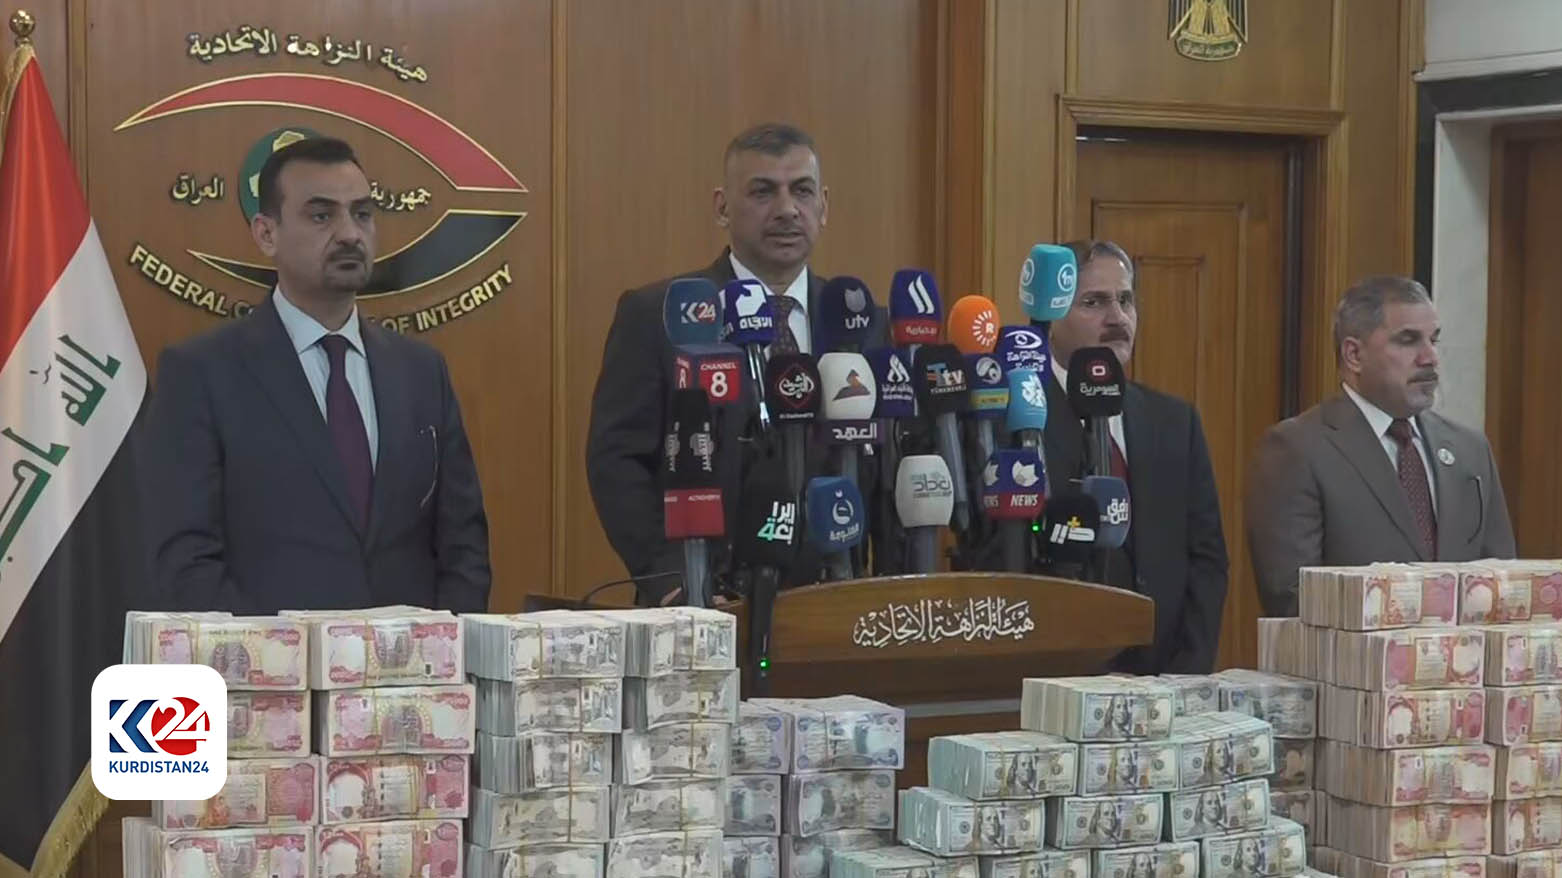 کنفرانس خبری حیدر حنون، رئیس ستاد مبارزه با فساد عراق